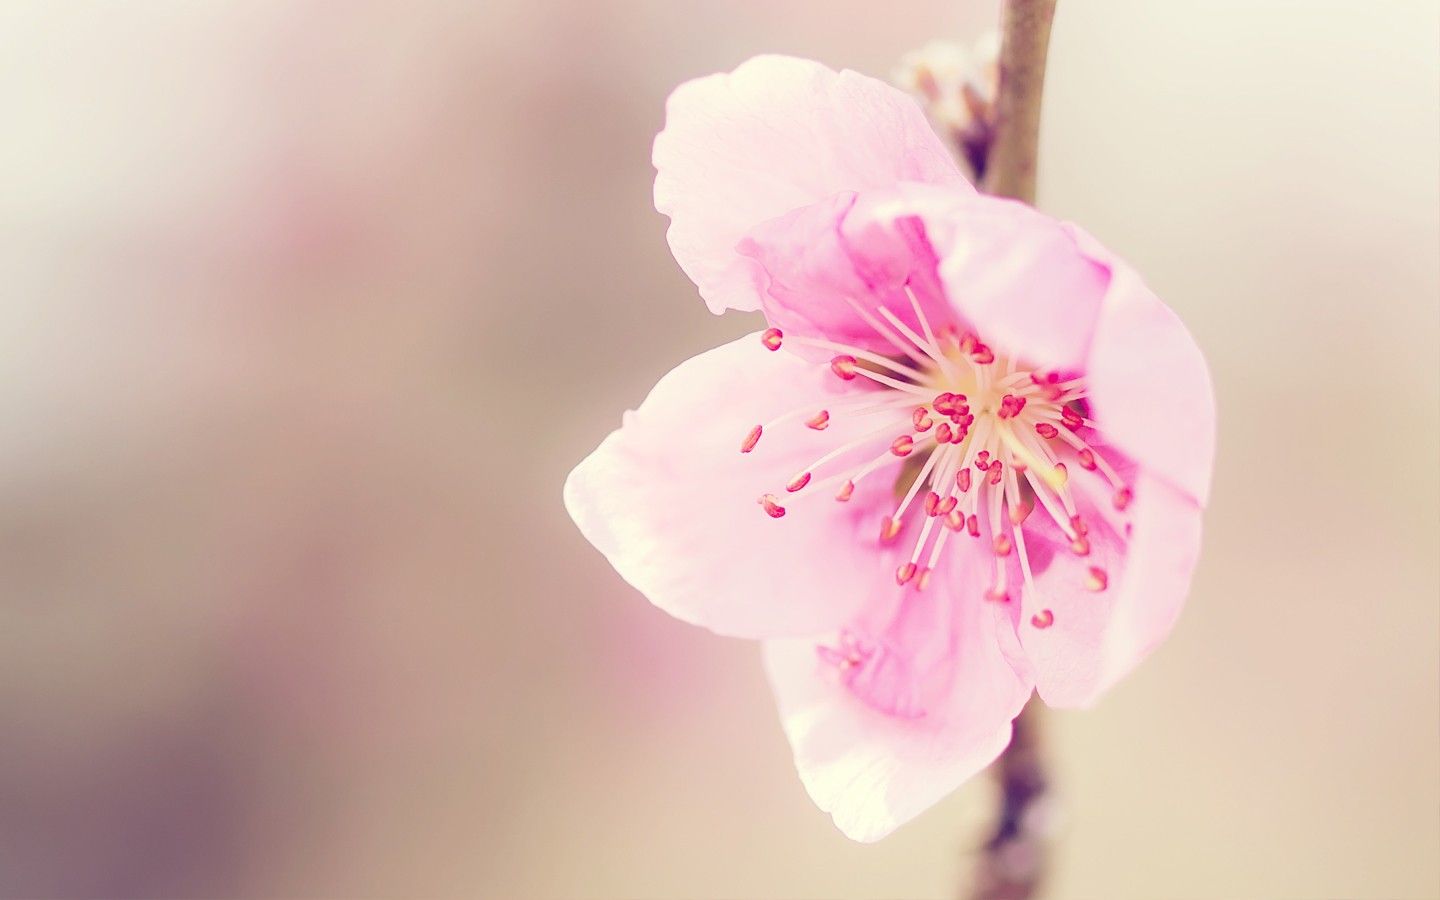 بکگراند منحصر به فرد و زیبا از شکوفه قشنگ از درخت هلو